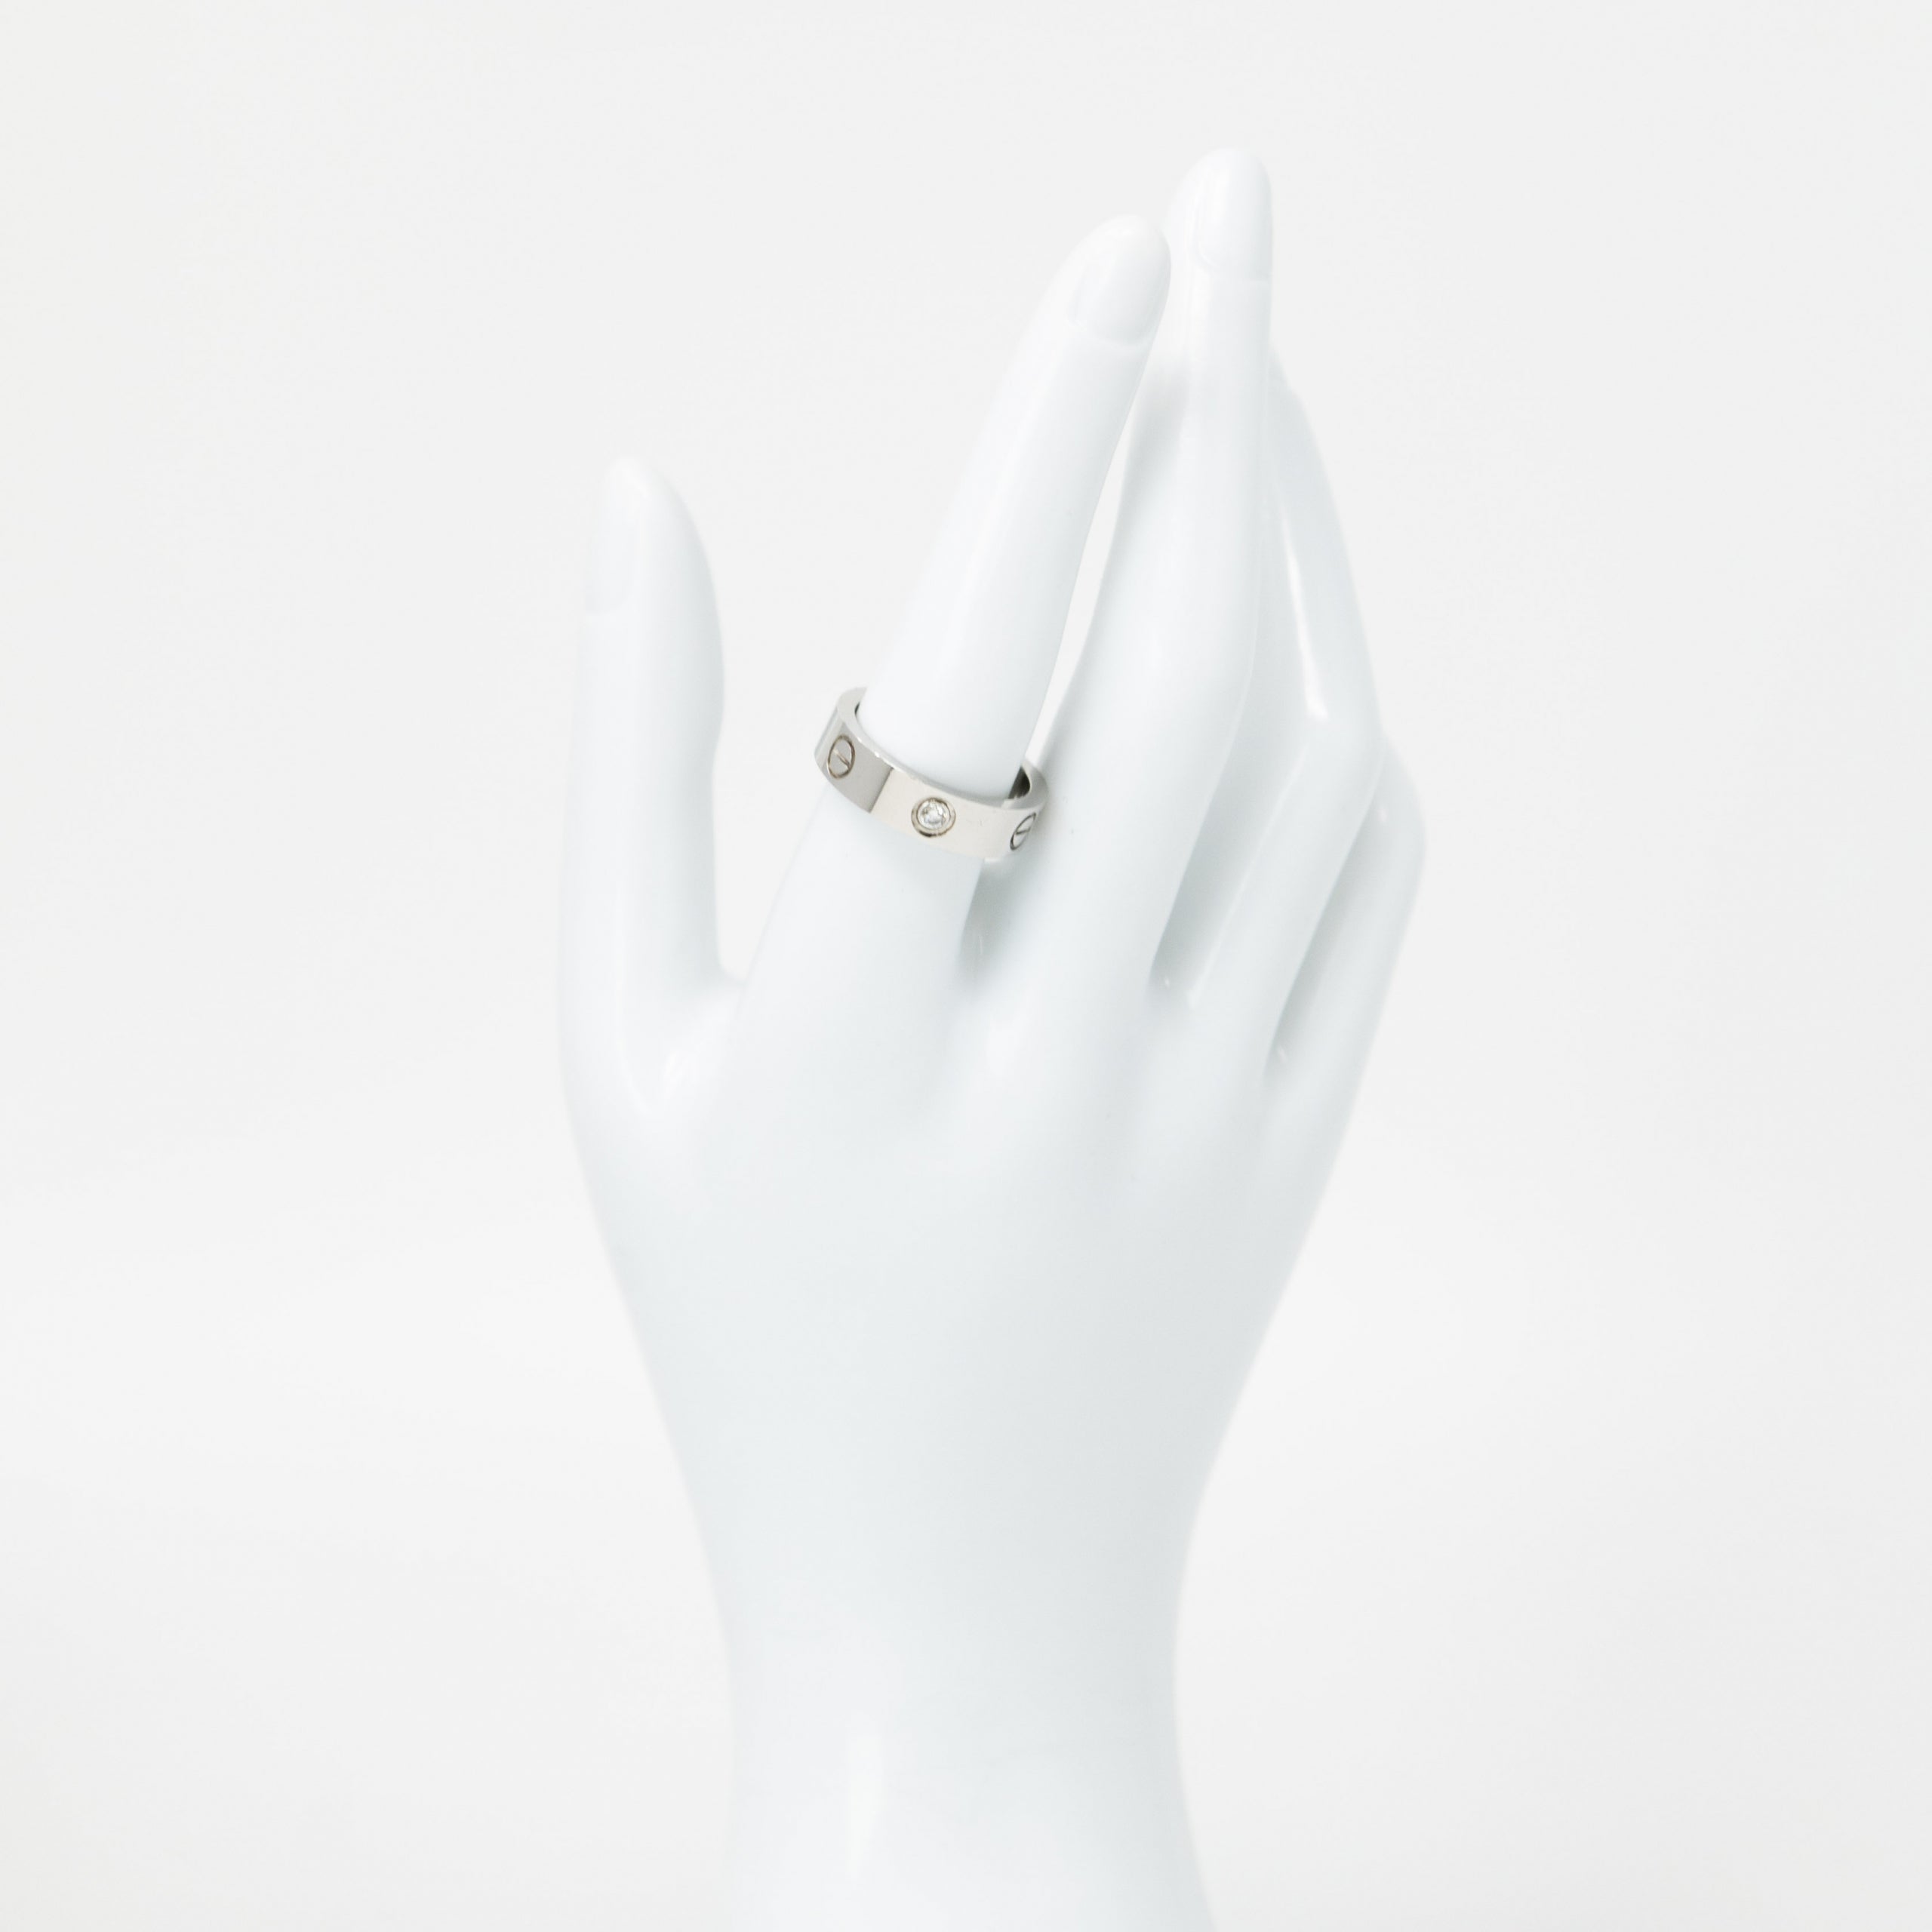 Cartier 18k White Gold 3 Diamond Love Ring